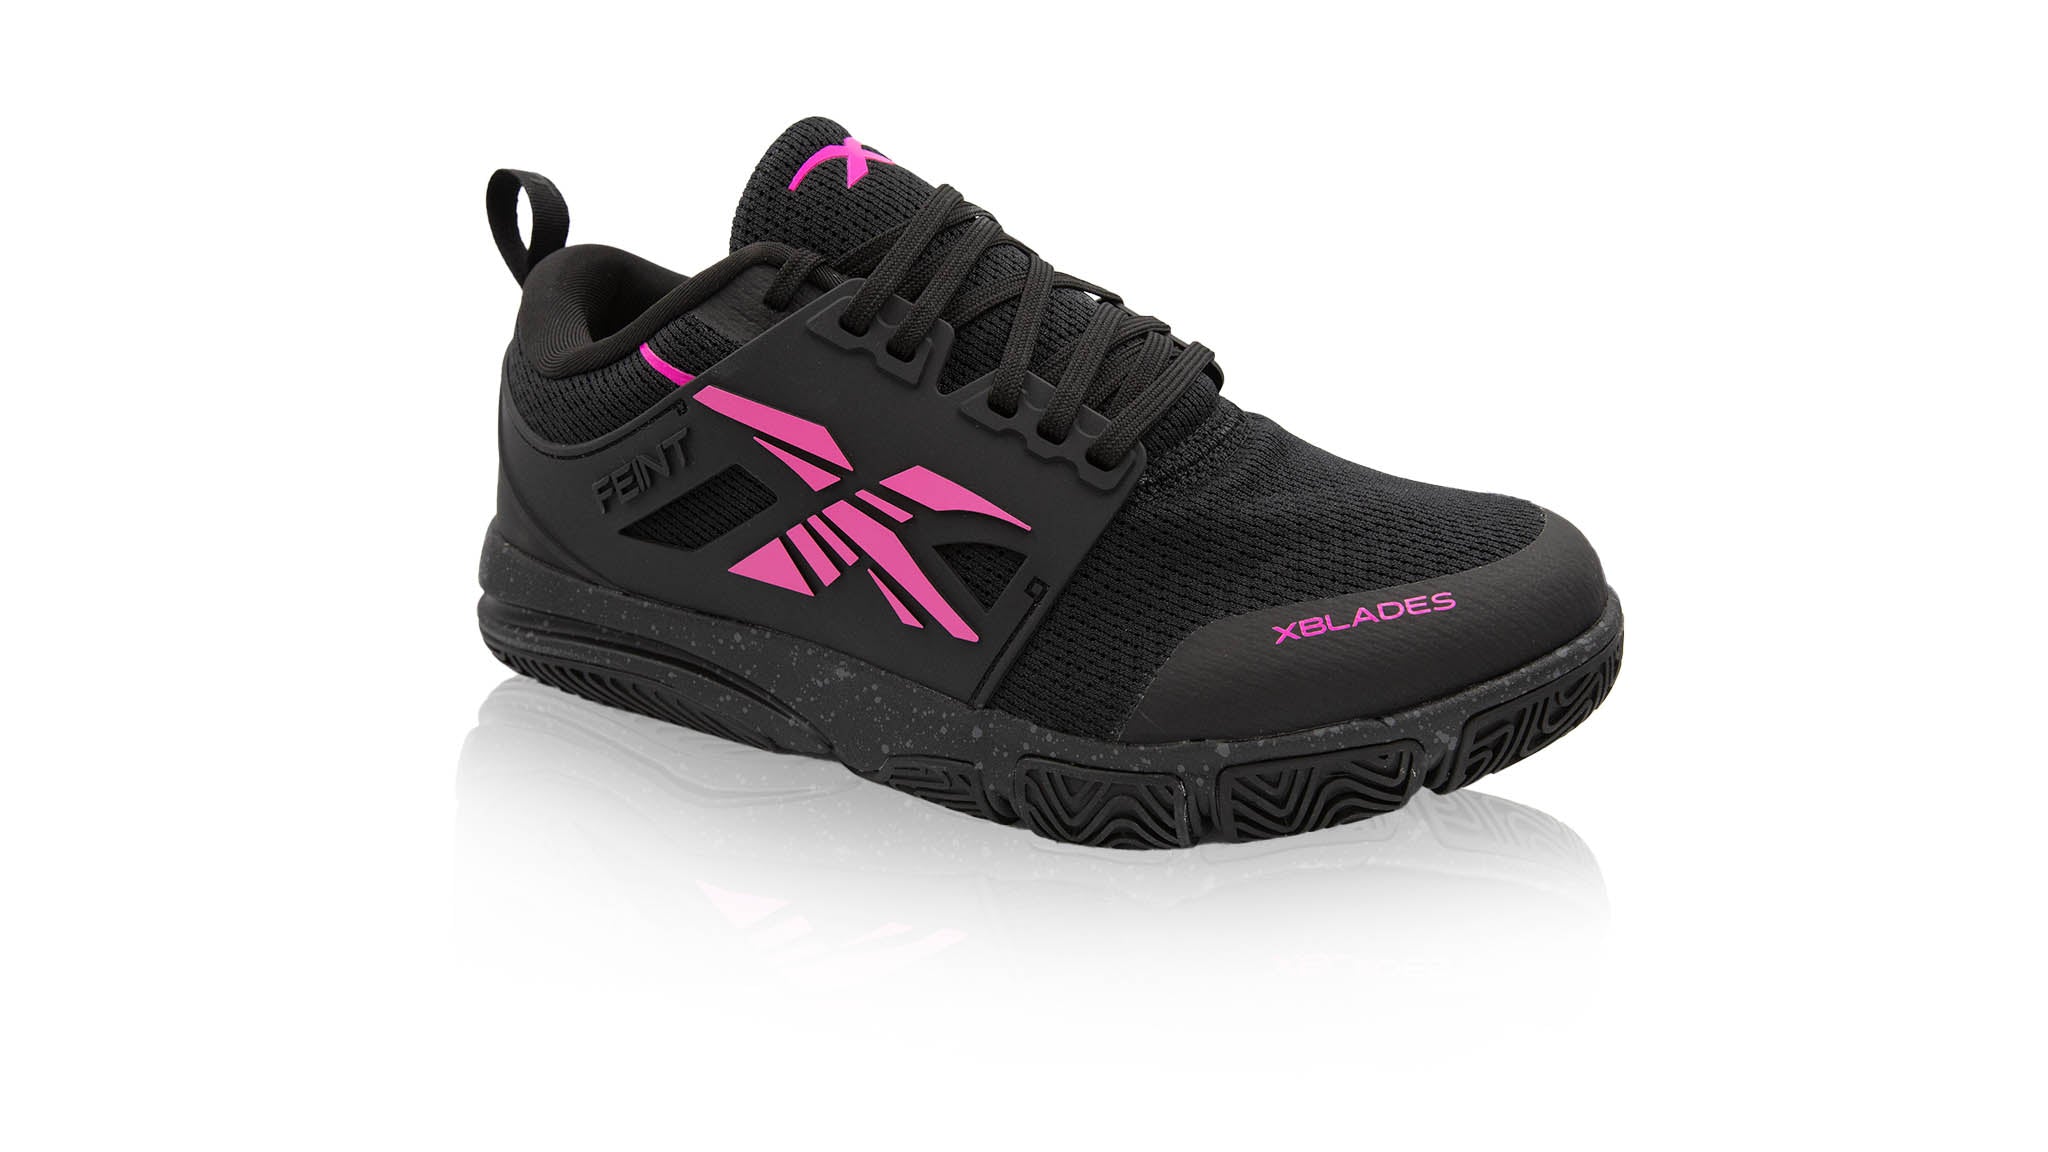 Feint 2 Women's/Unisex Netball Shoes